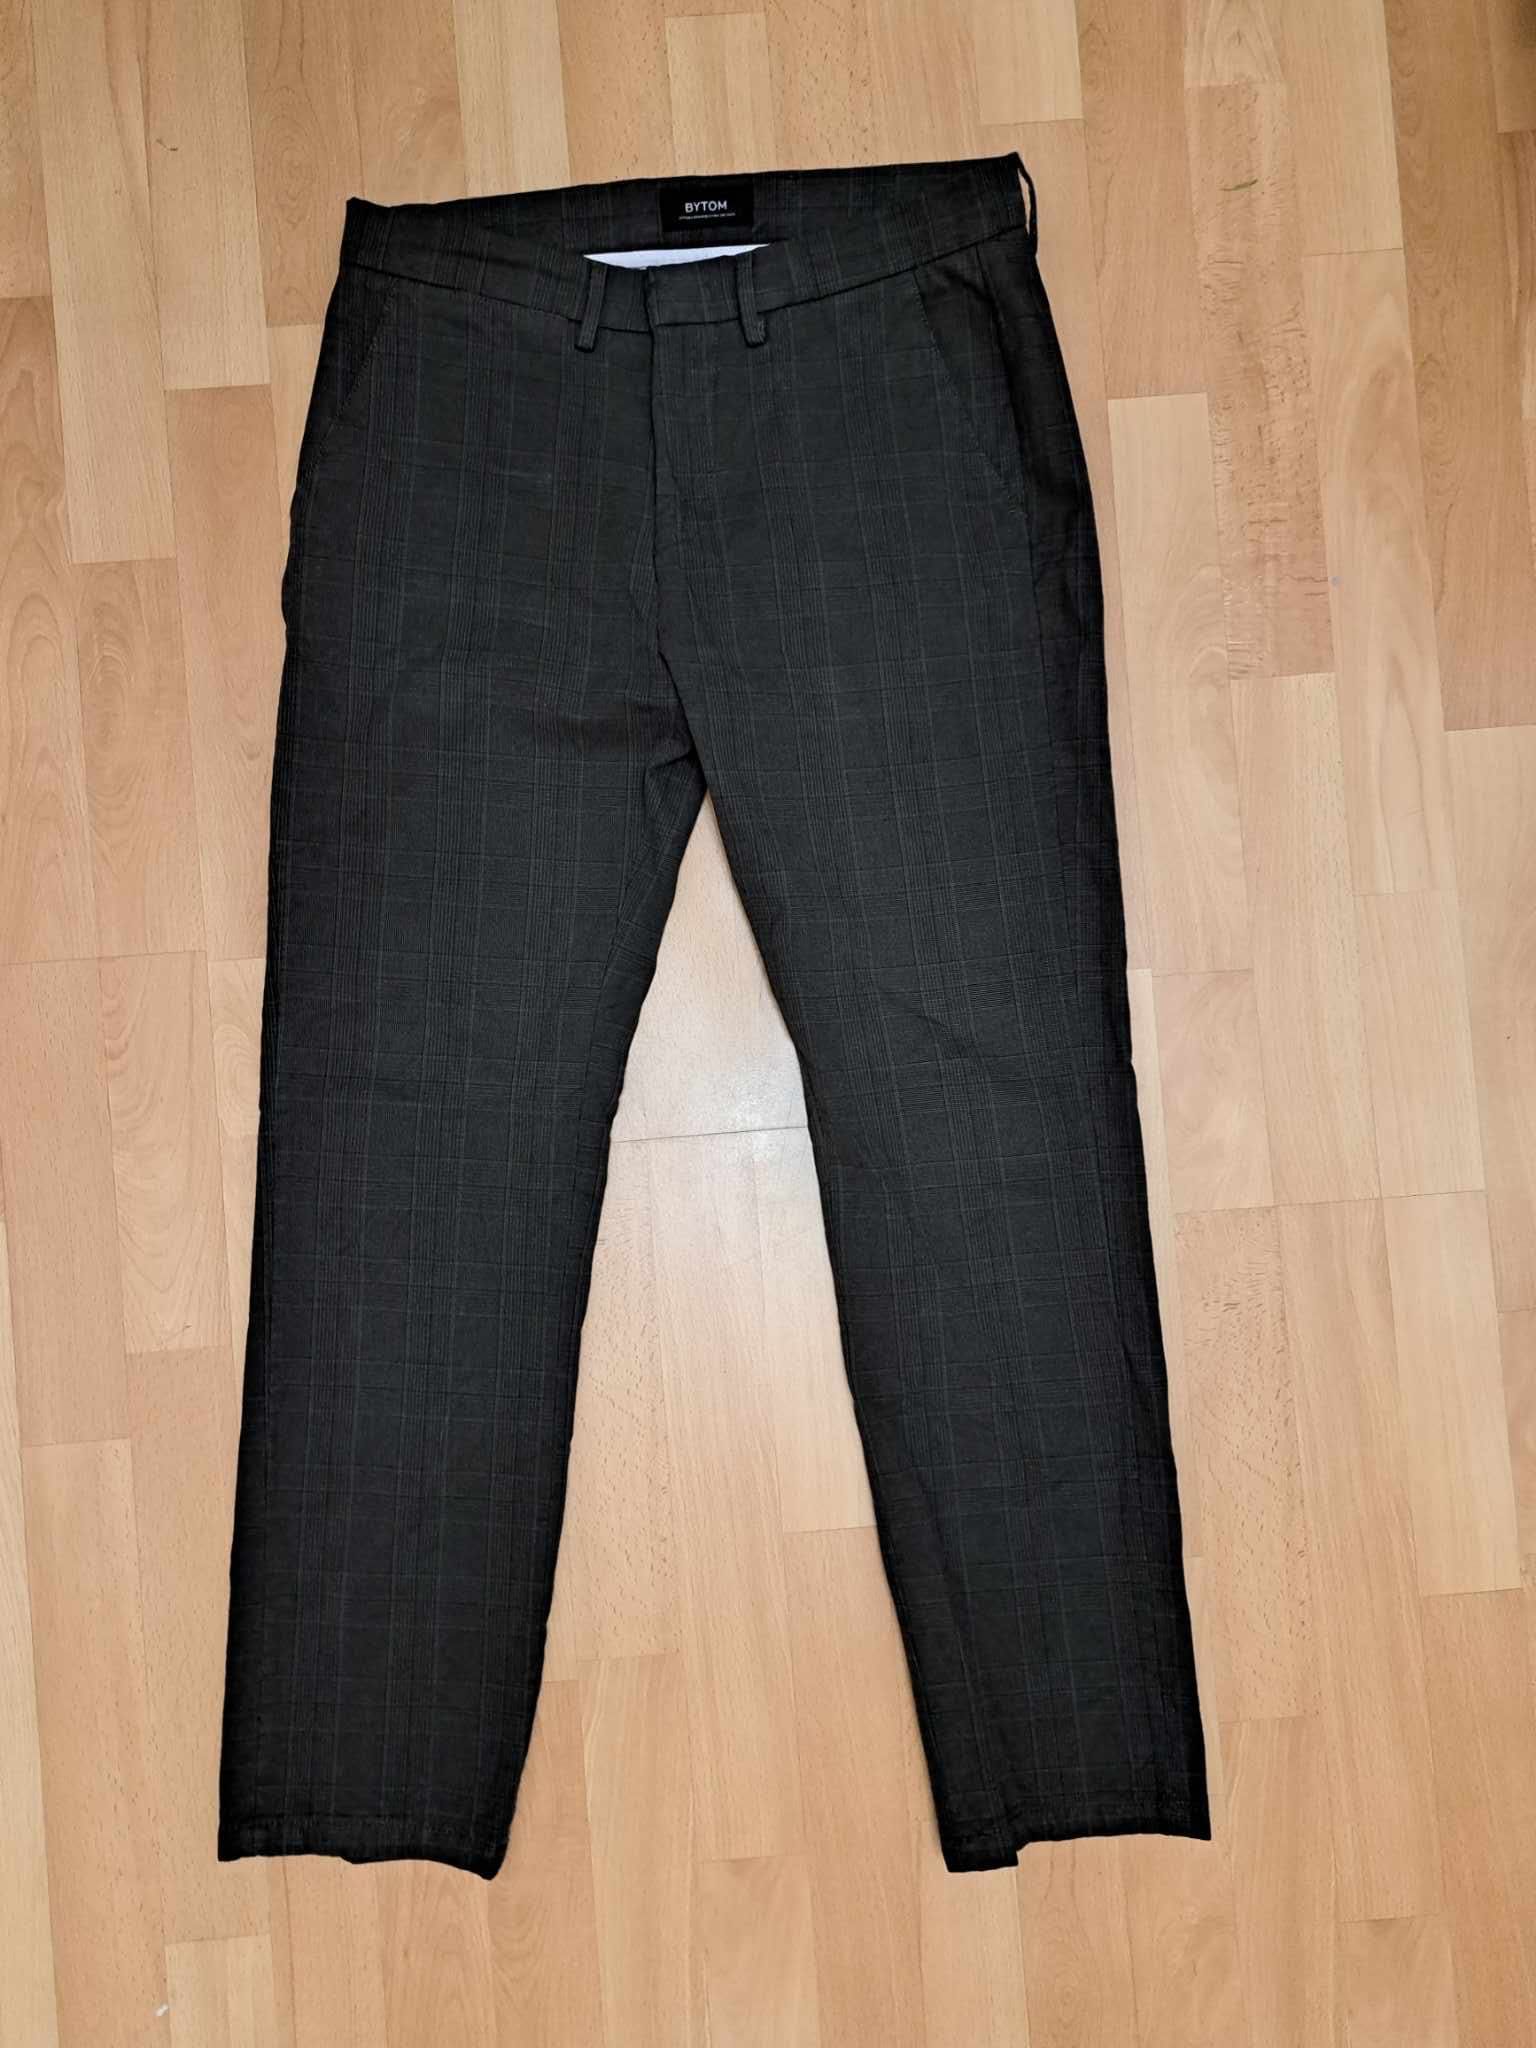 Spodnie materiałowe Bytom W31 L32 ciemne kratka nie noszone M/L